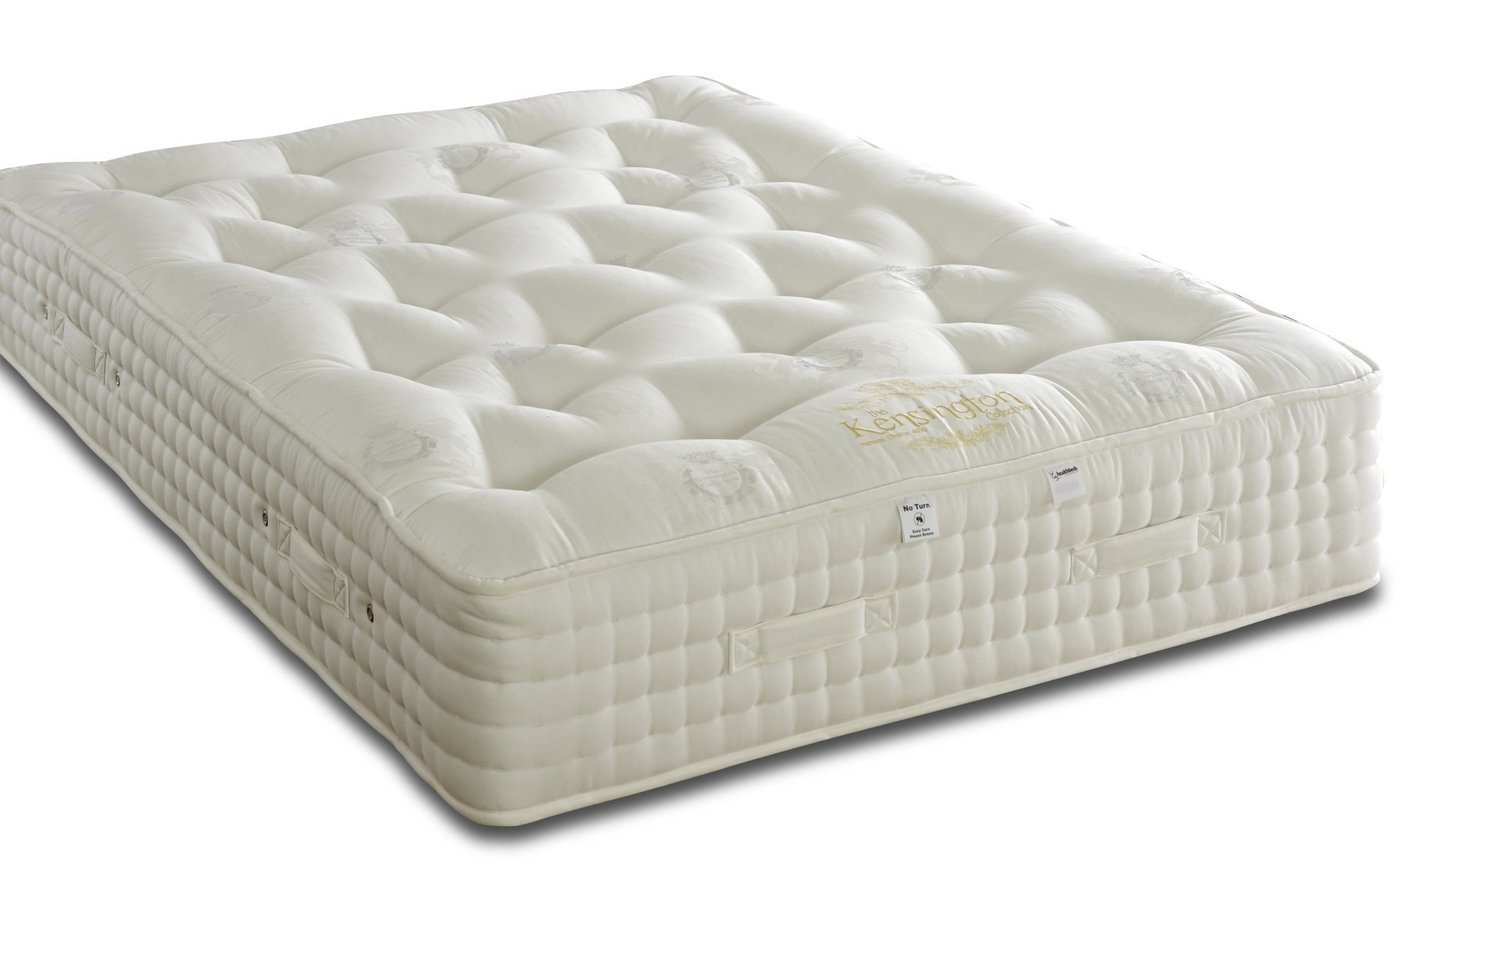 1500 pocket spring mattress king size